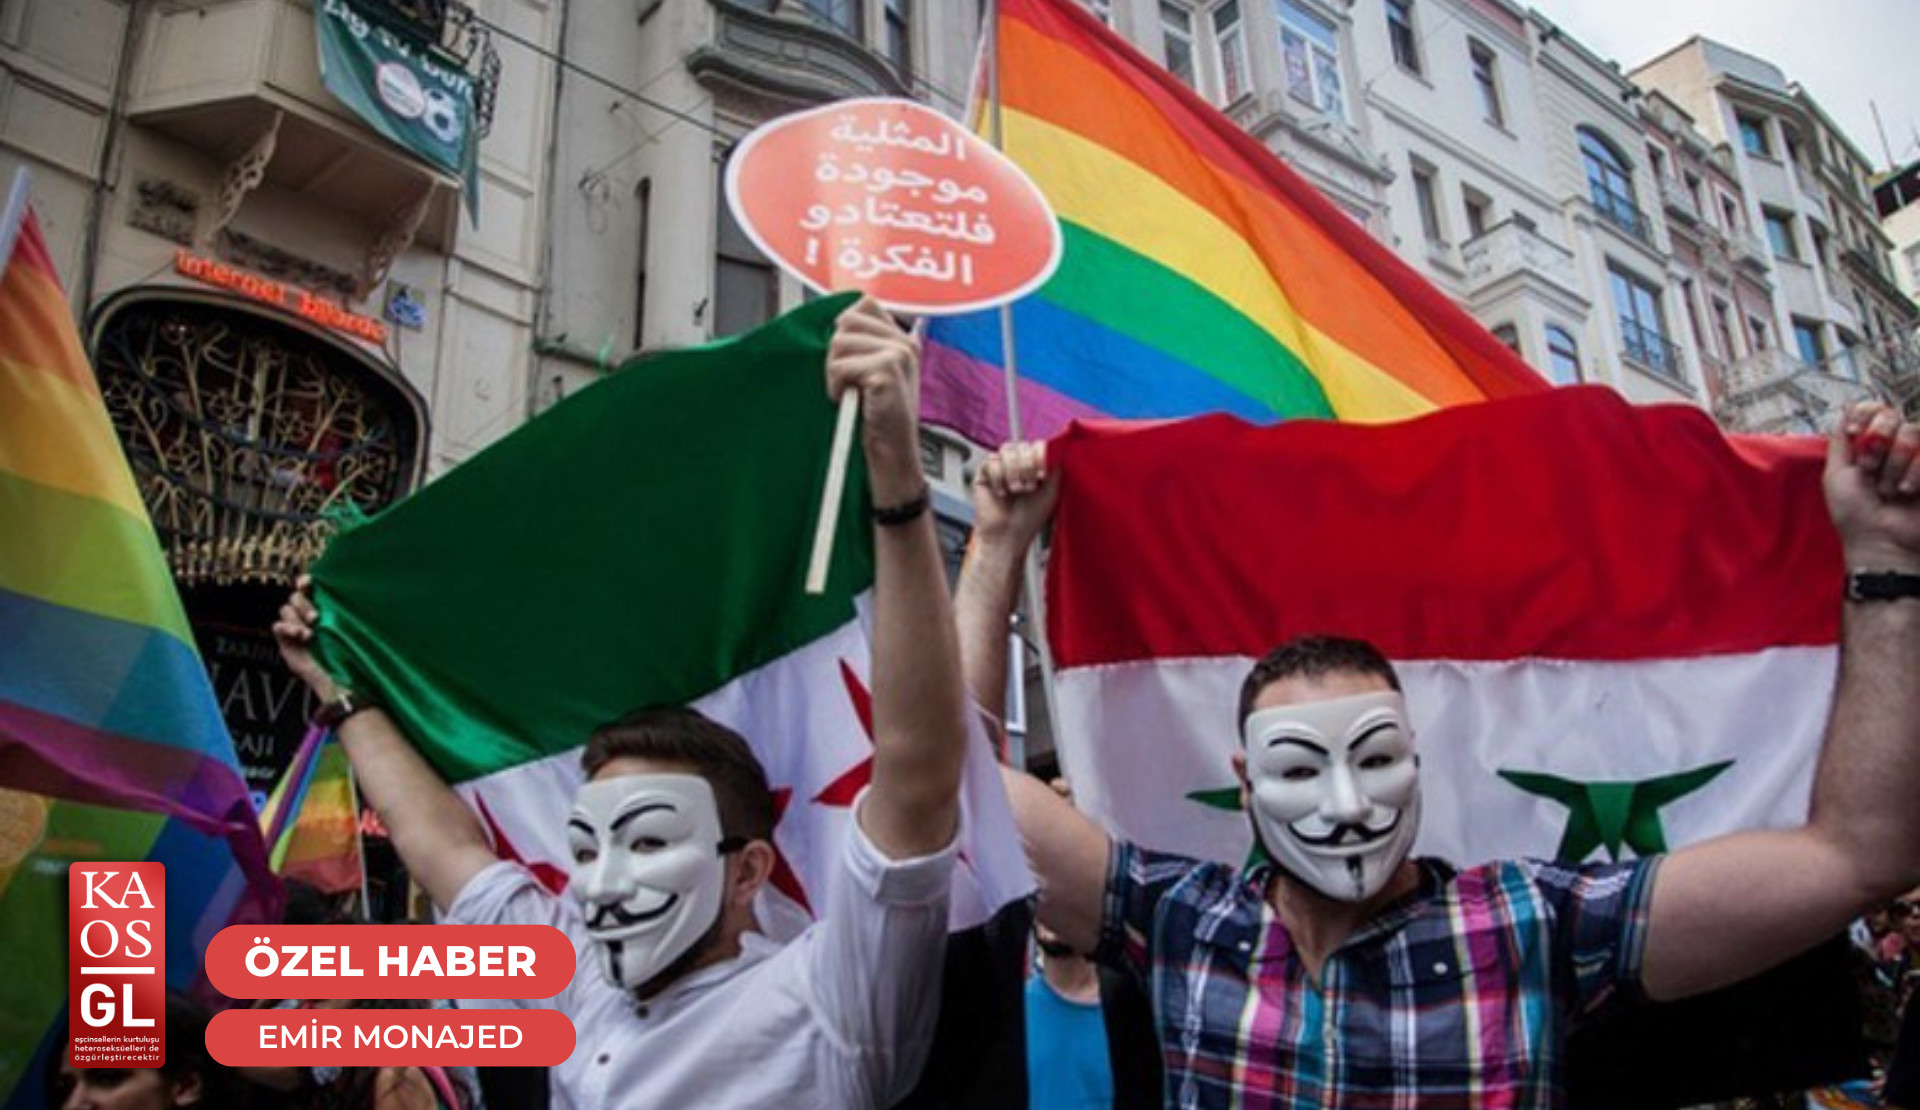 “Seçim süreçlerinde evimden çıkmıyorum” Kaos GL - LGBTİ+ Haber Portalı